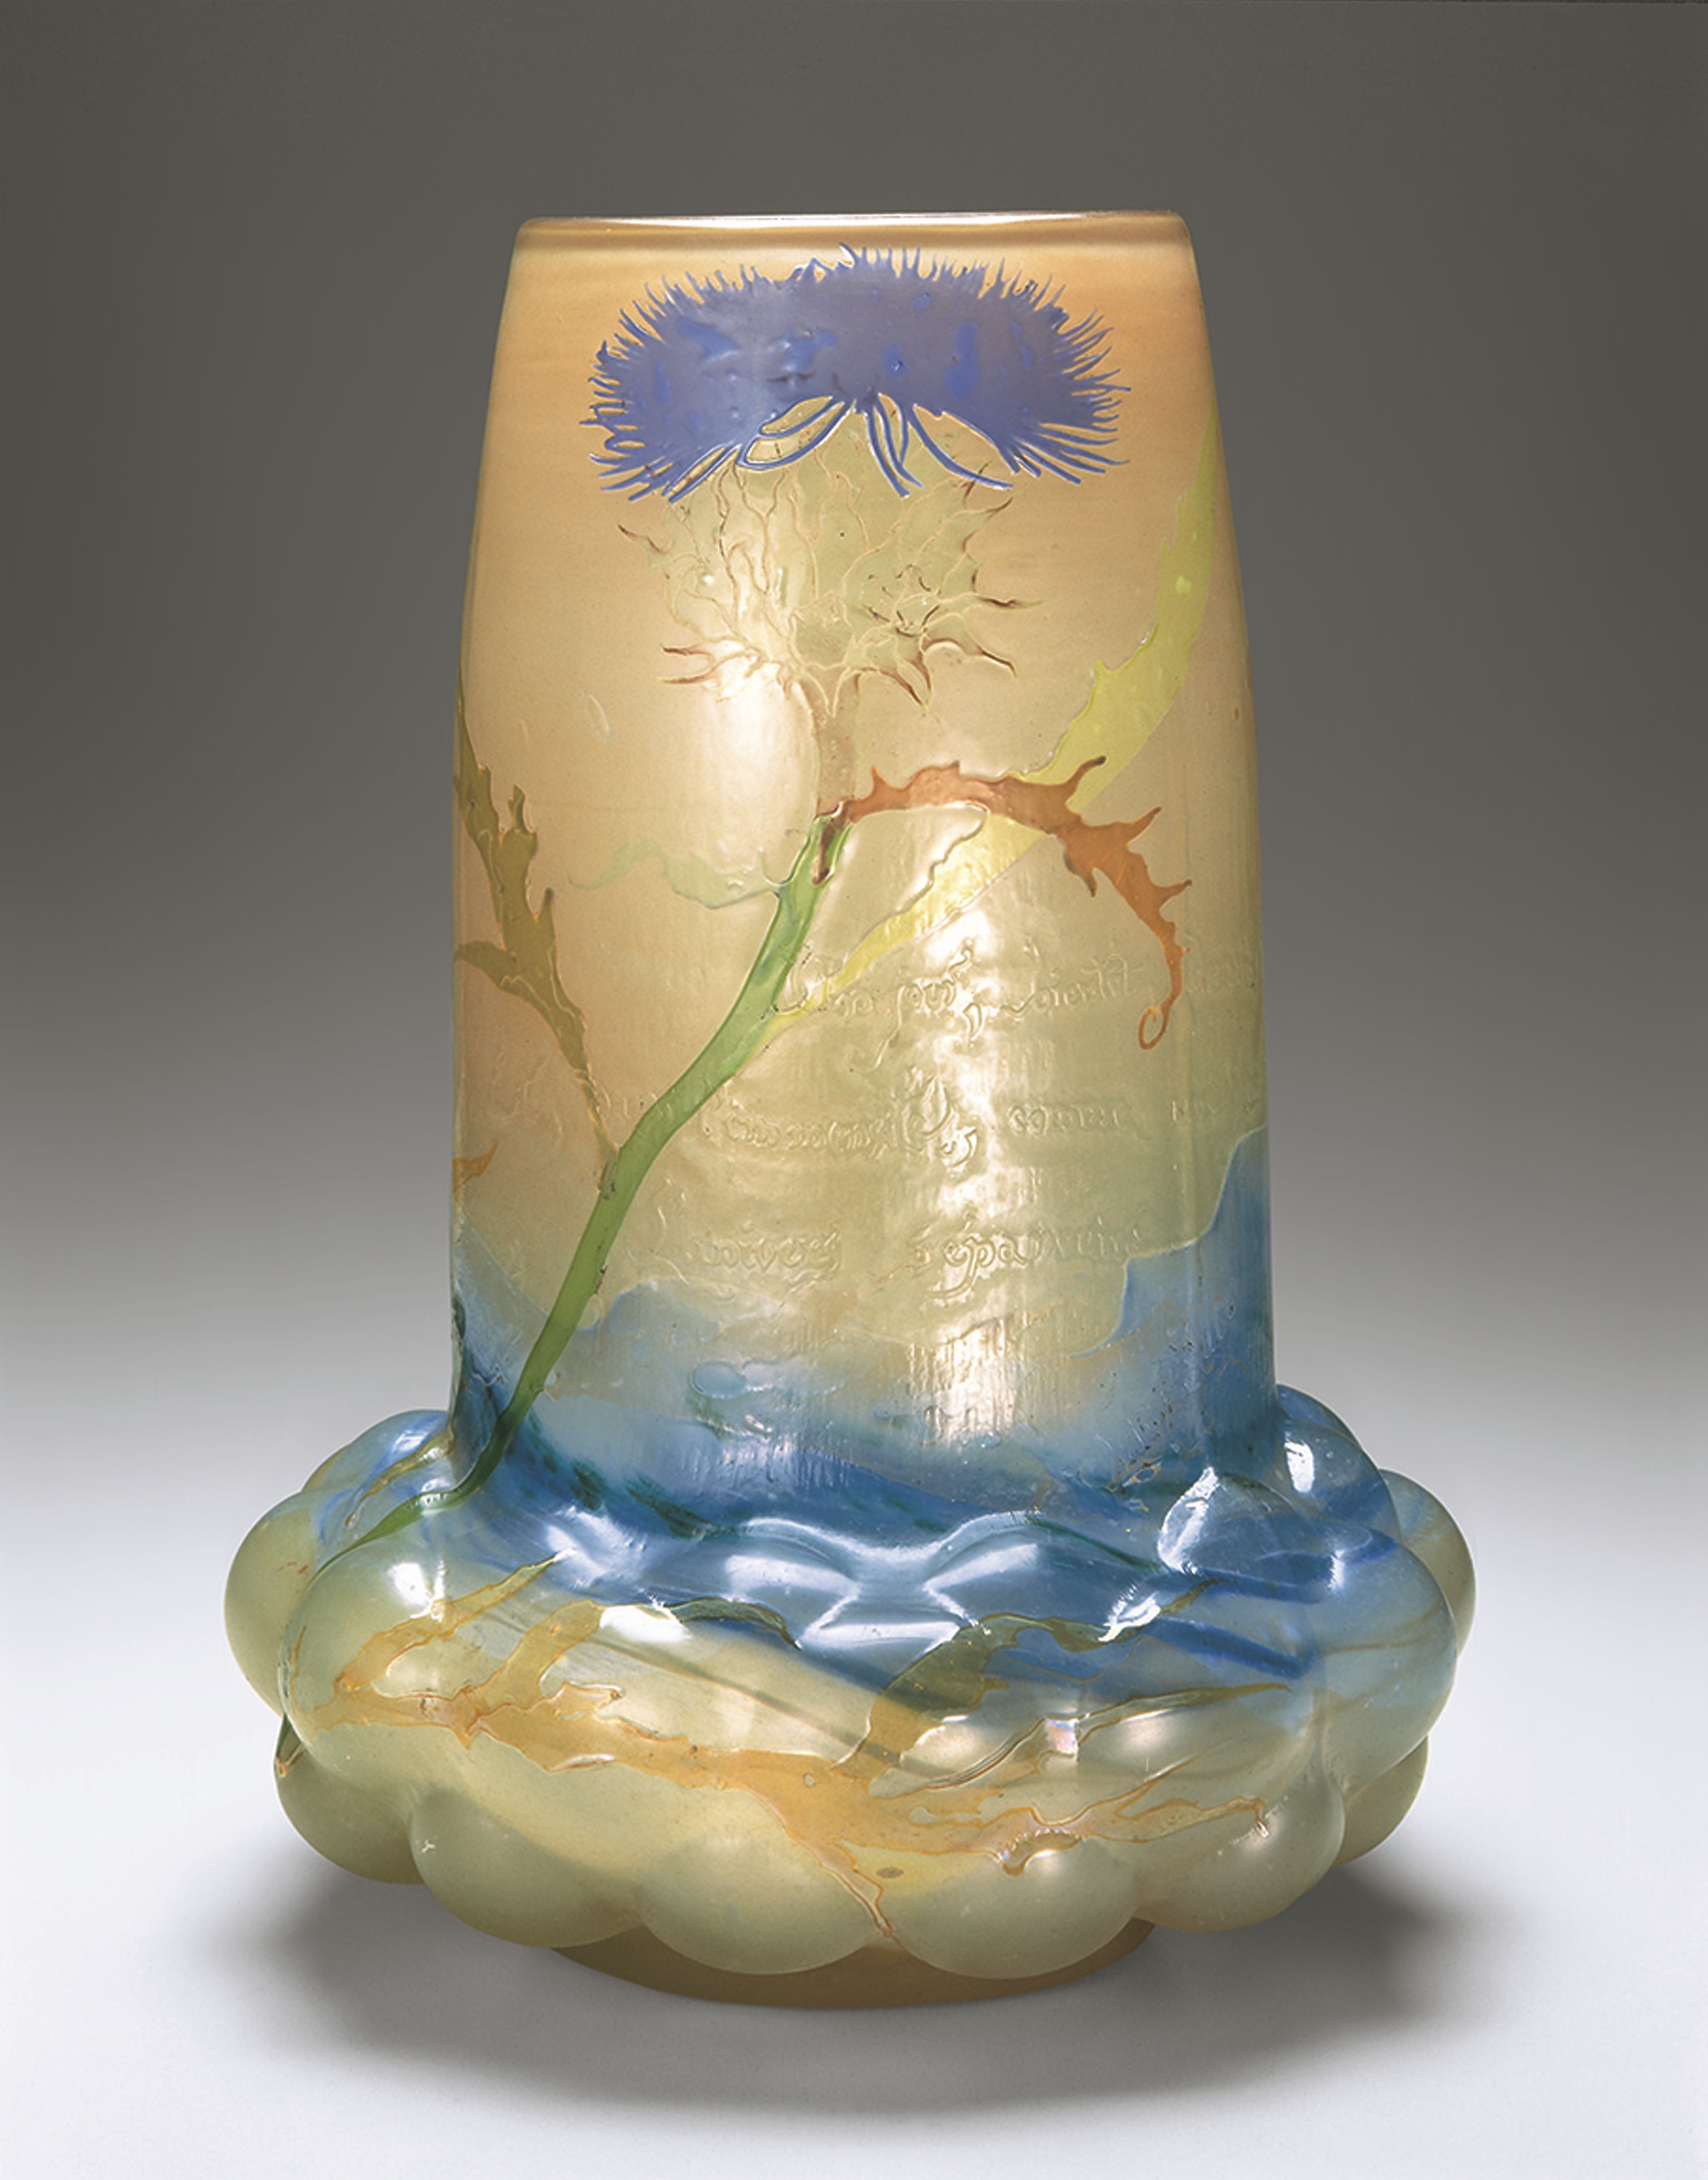 エミール・ガレ 《花瓶「あざみ」》 1900年（年記）1900年パリ万国博覧会出品作 北澤美術館